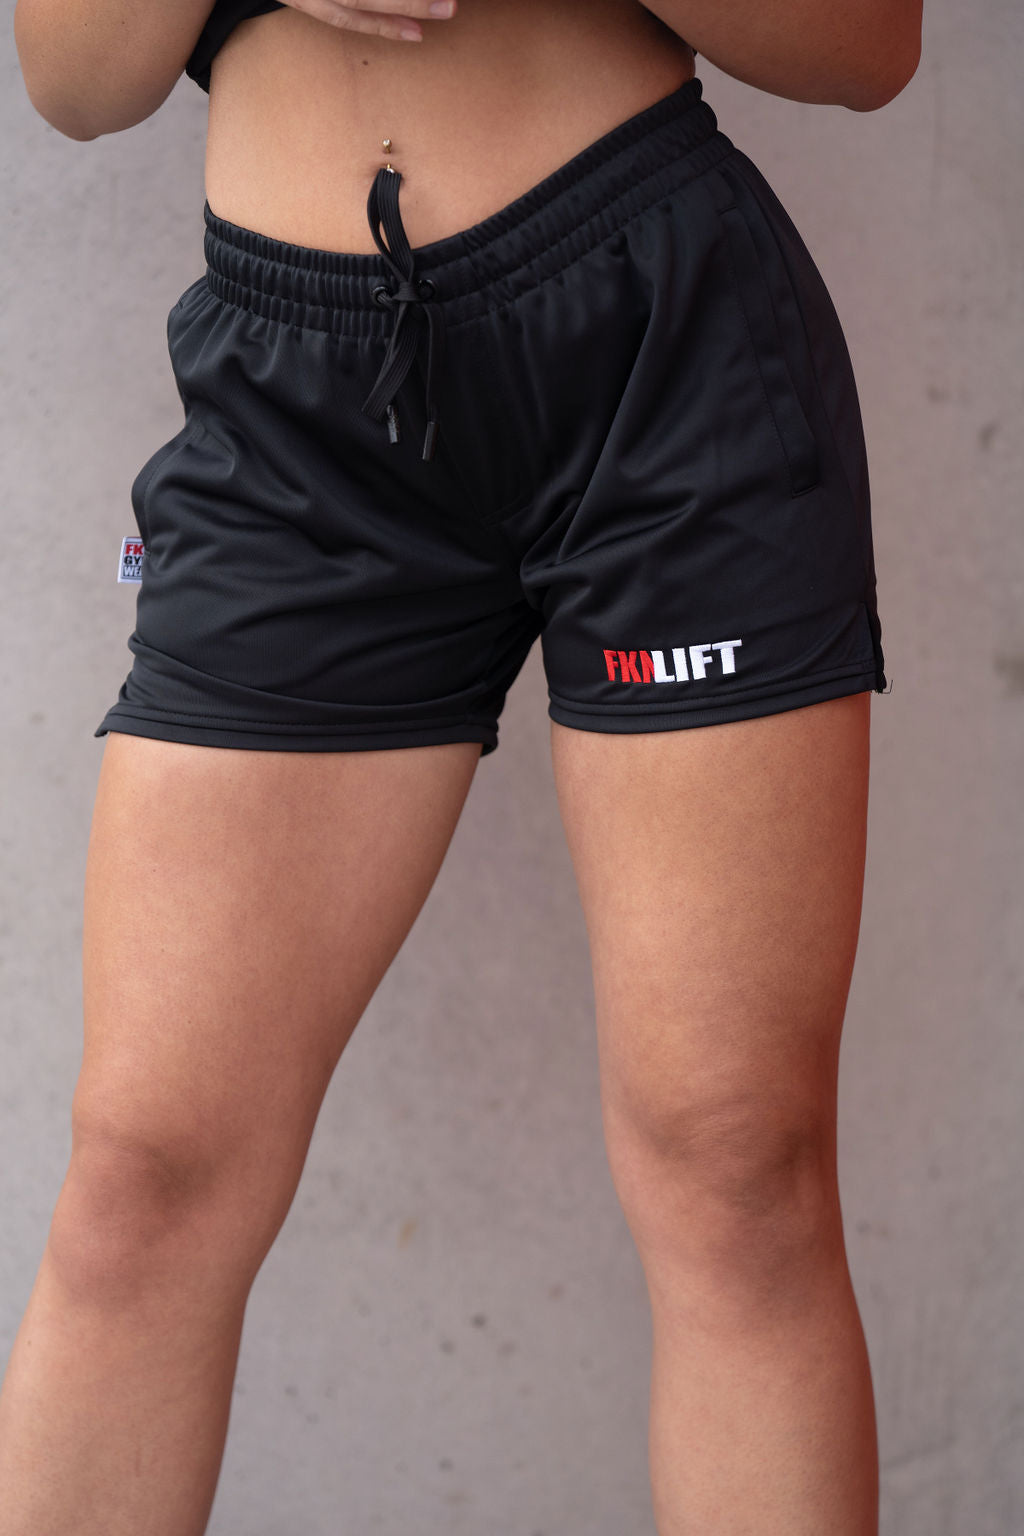 FKNLIFT, Women's Gym Shorts